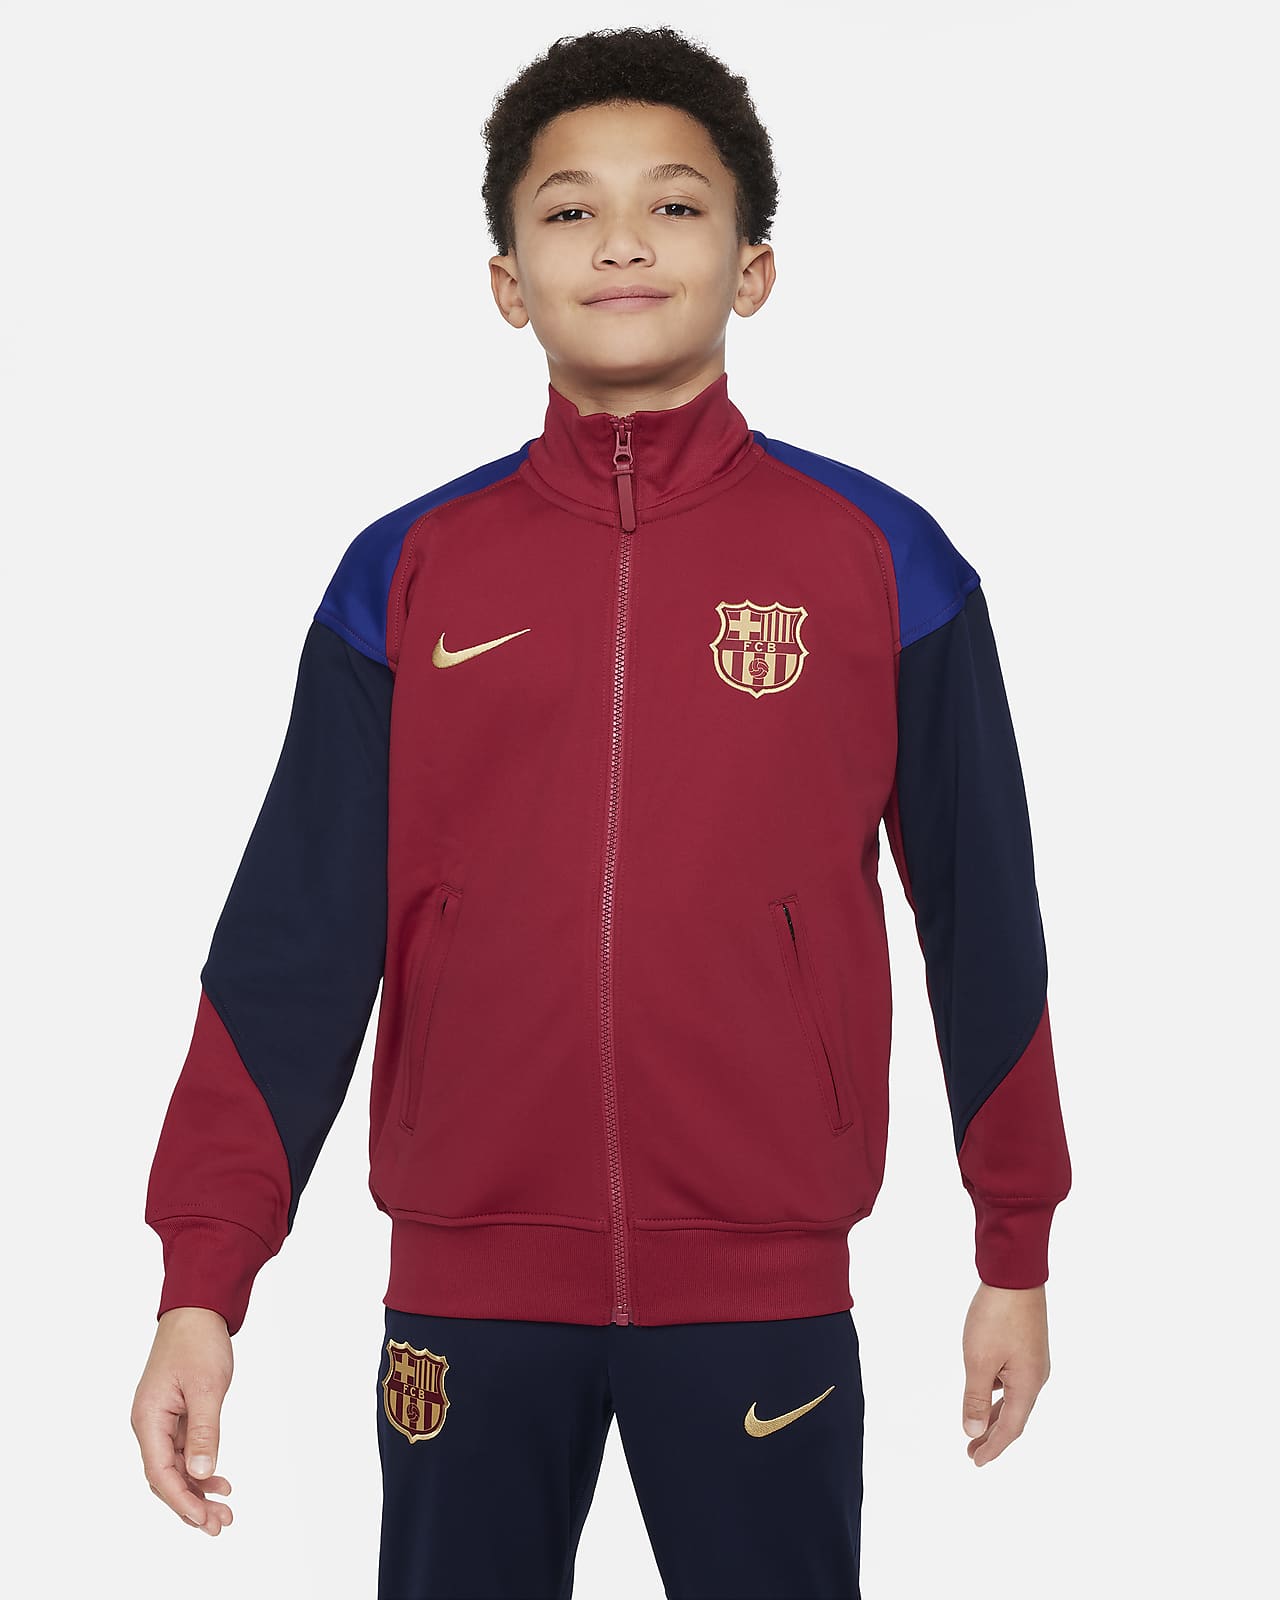 FC Barcelona Academy Pro (tredjedrakt) Nike Dri-FIT strikket fotballjakke til store barn